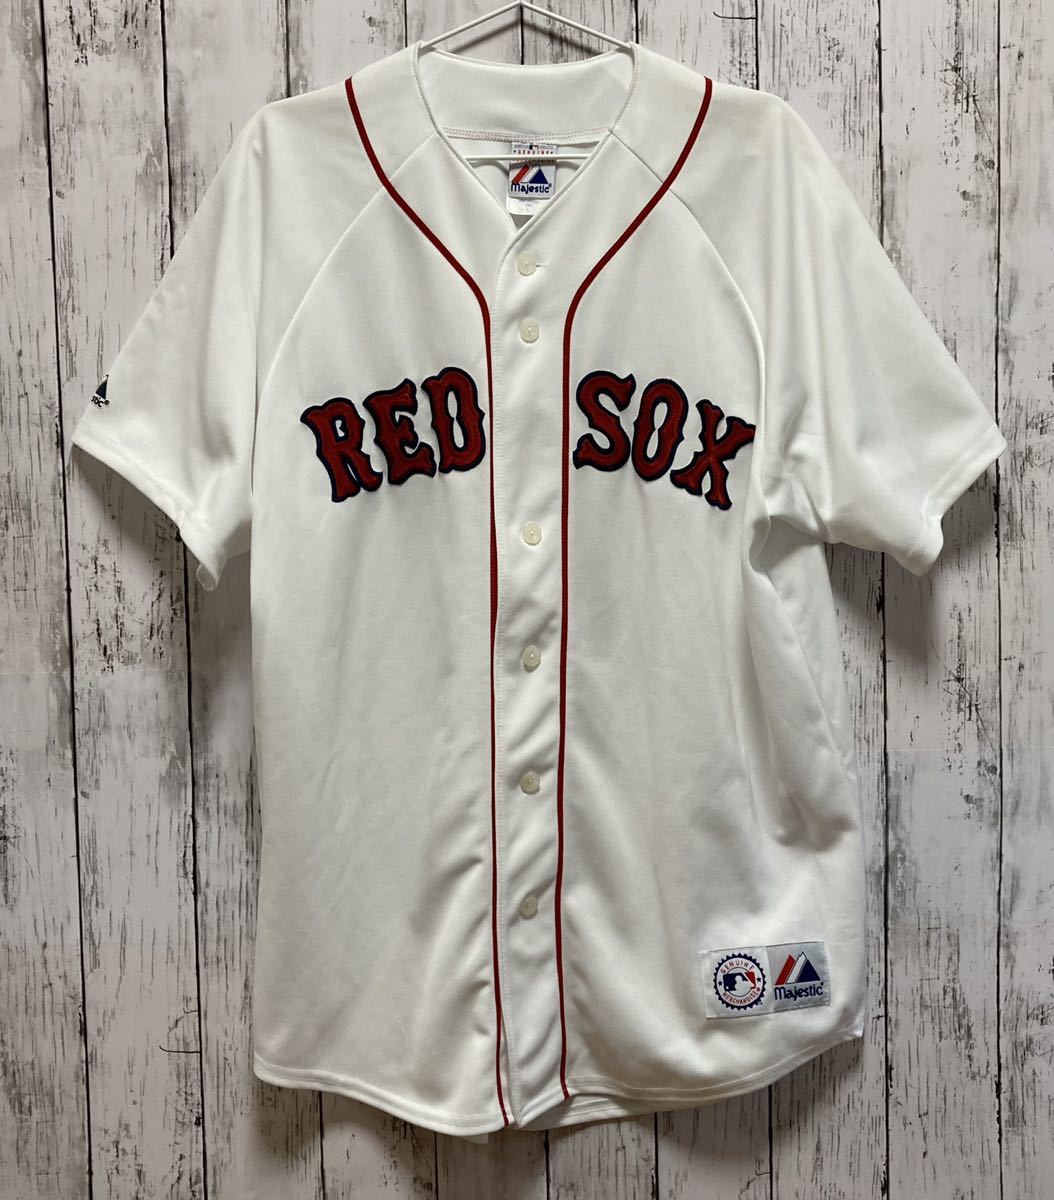 【Majestic】 マジェスティック MLB 野球 メジャーリーグ Boston RED SOX レッドソックス ユニフォーム L 背番号無し 澤村 上原 松坂_画像1